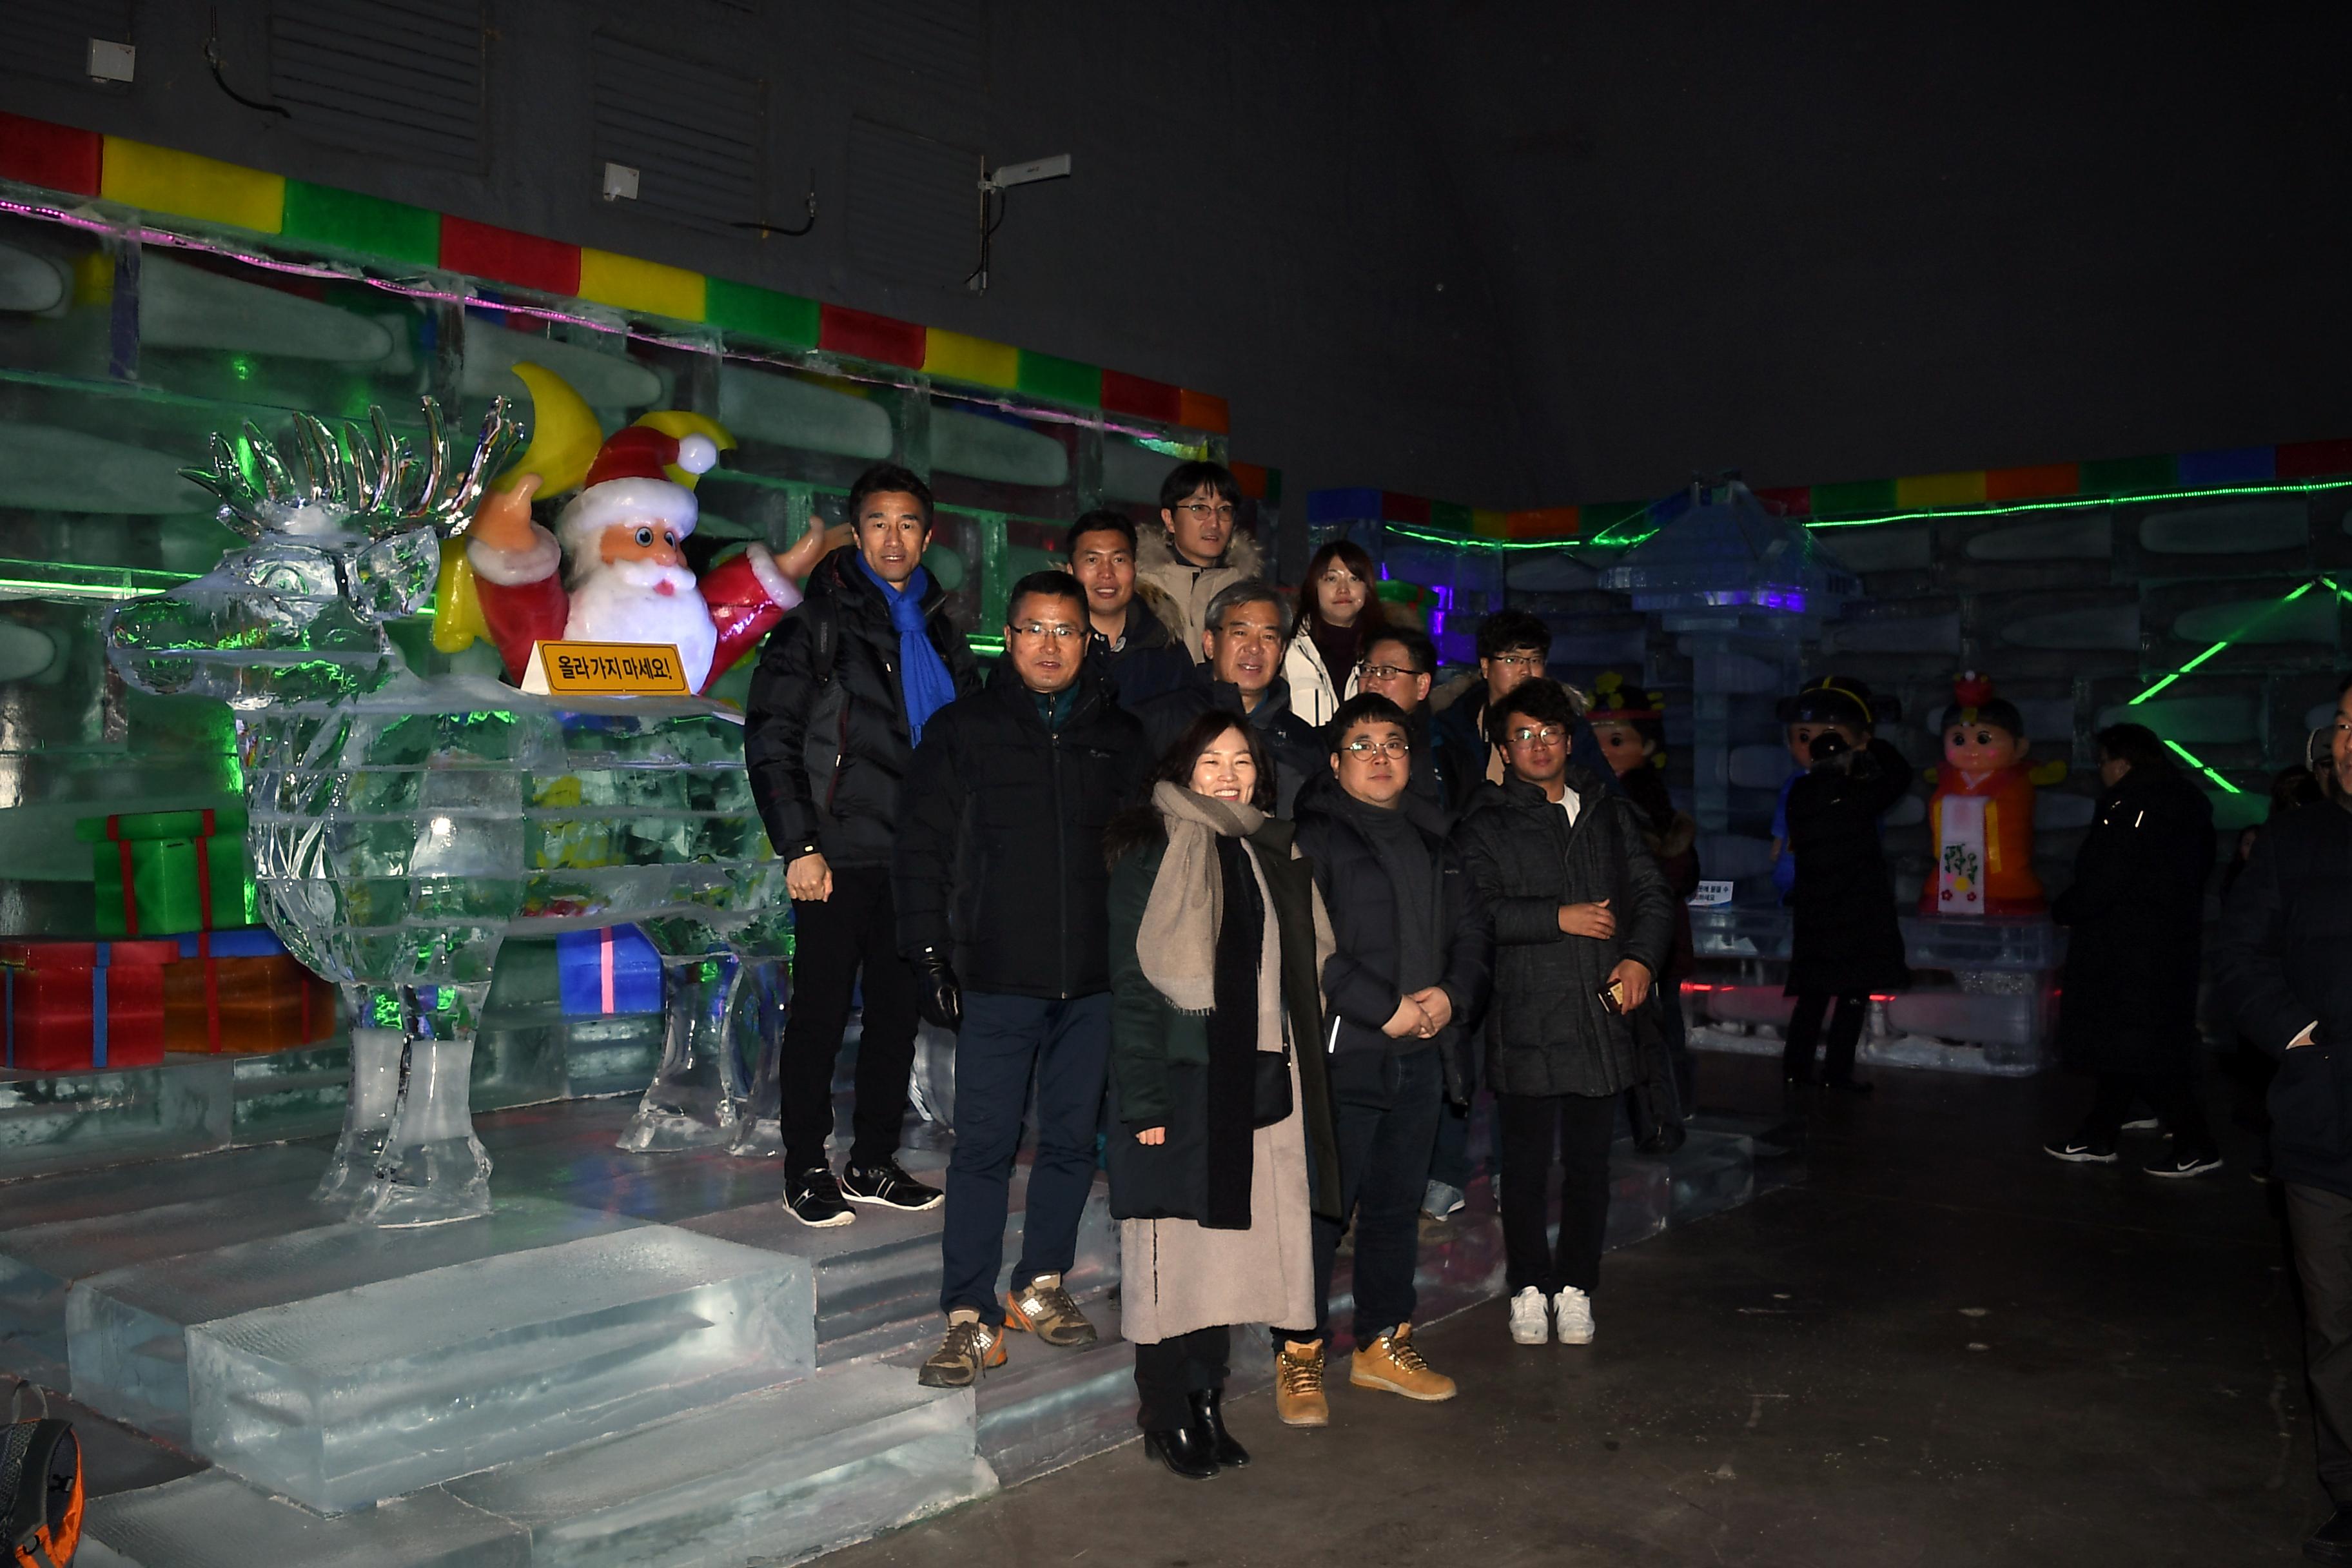 2019 화천산천어축제 곡성군청 유기근 군수 접견 의 사진